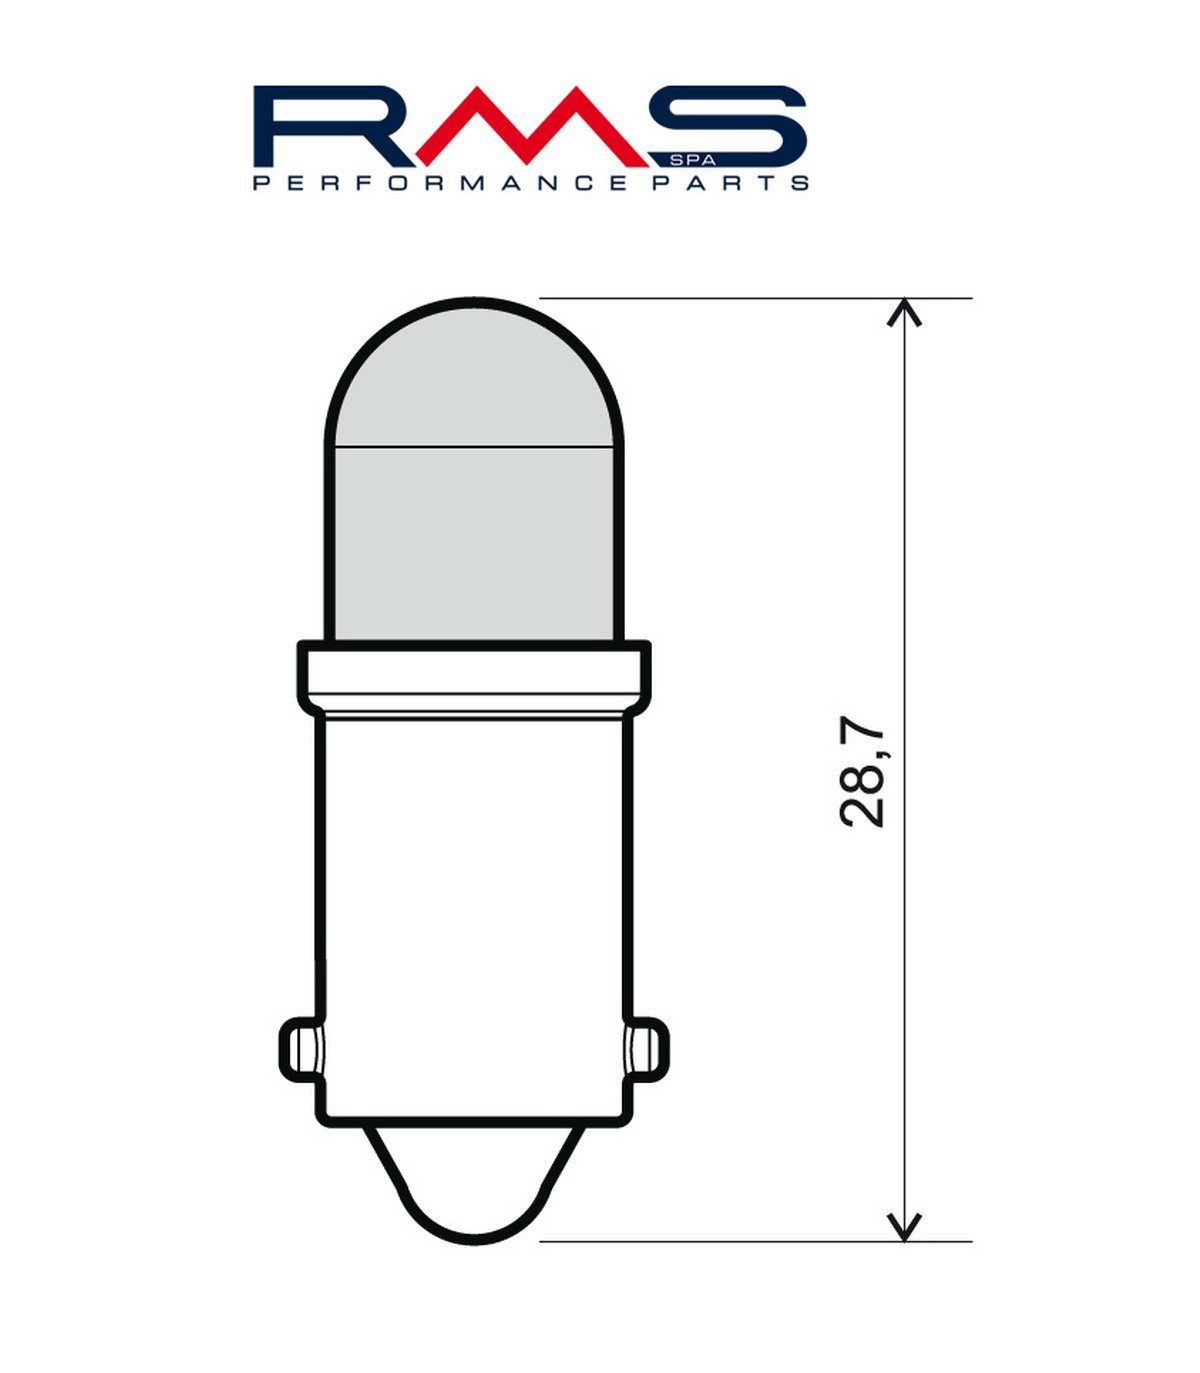 Obrázek produktu Žárovka RMS 246510550 Led 12V, BA9S modrá 246510550